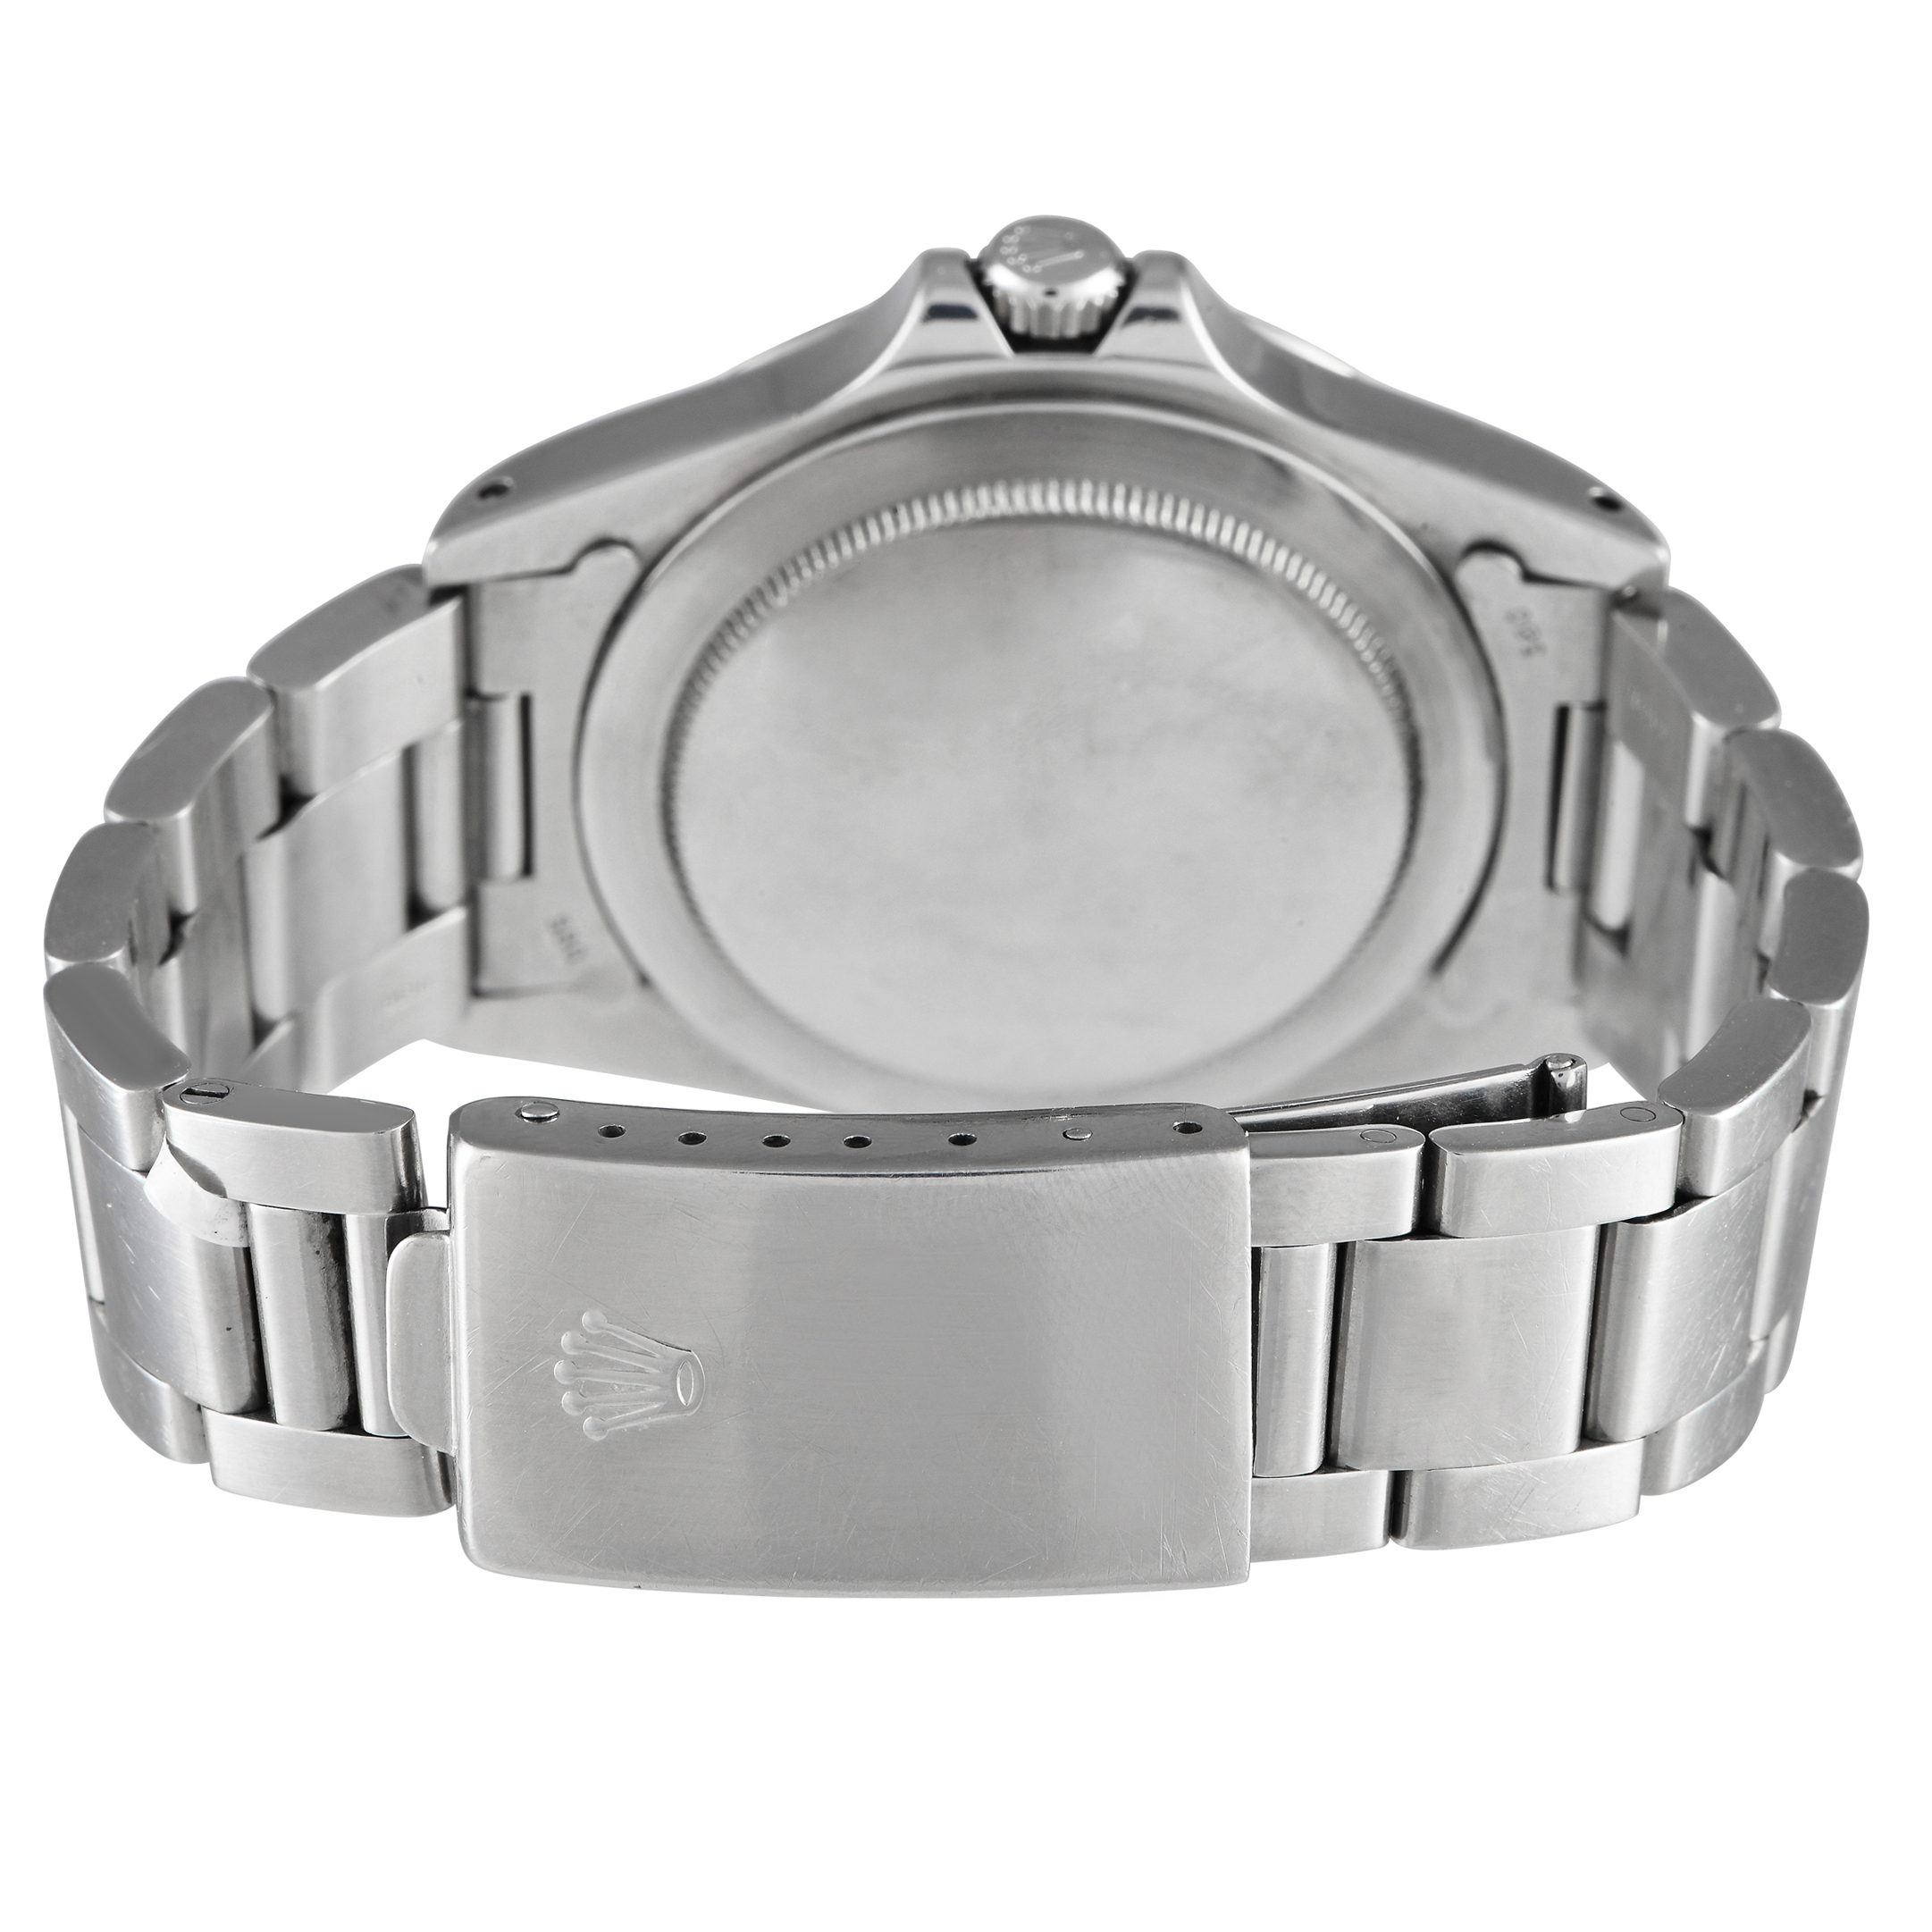 Rolex Vintage Explorer II Watch 1655